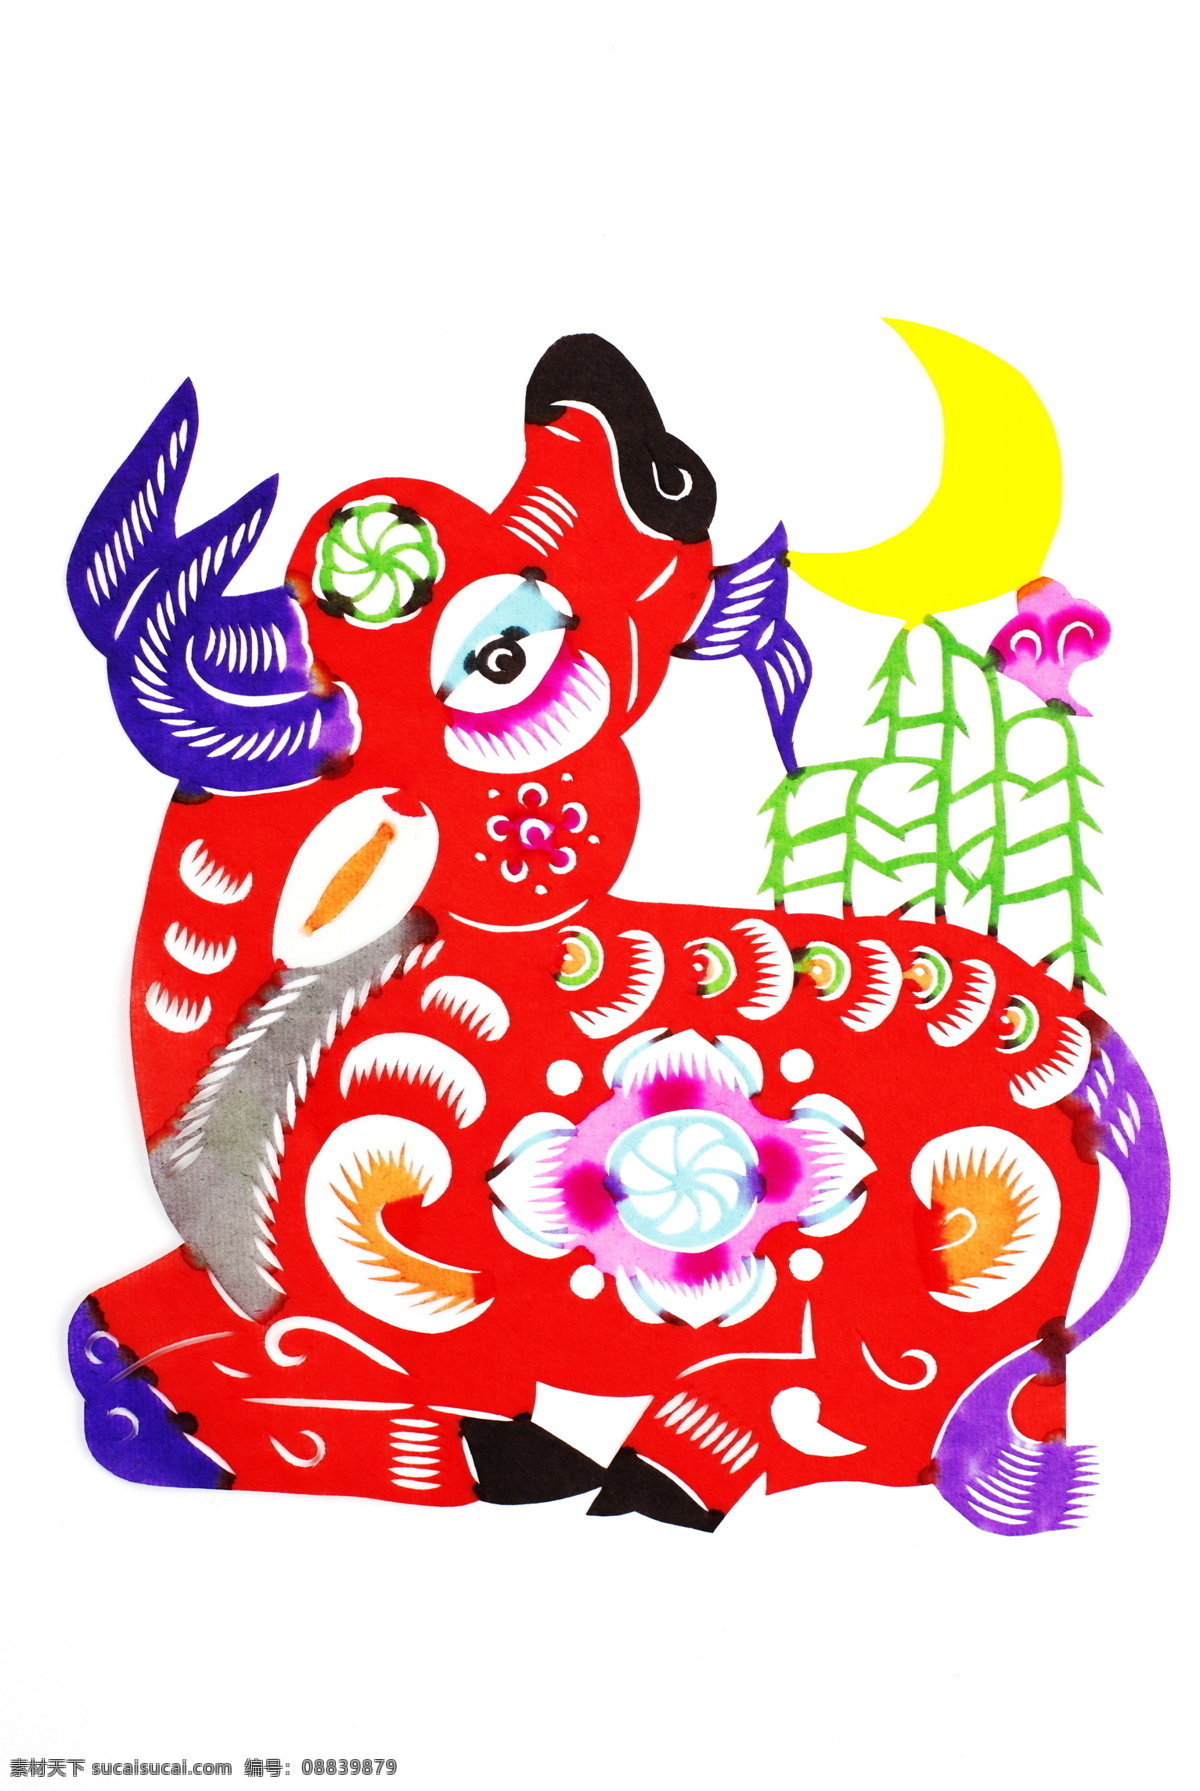 彩色 传统文化 过年 红色 年画 牛 牛年 设计素材 模板下载 年画牛 生肖 文化艺术 节日素材 2015 新年 元旦 春节 元宵